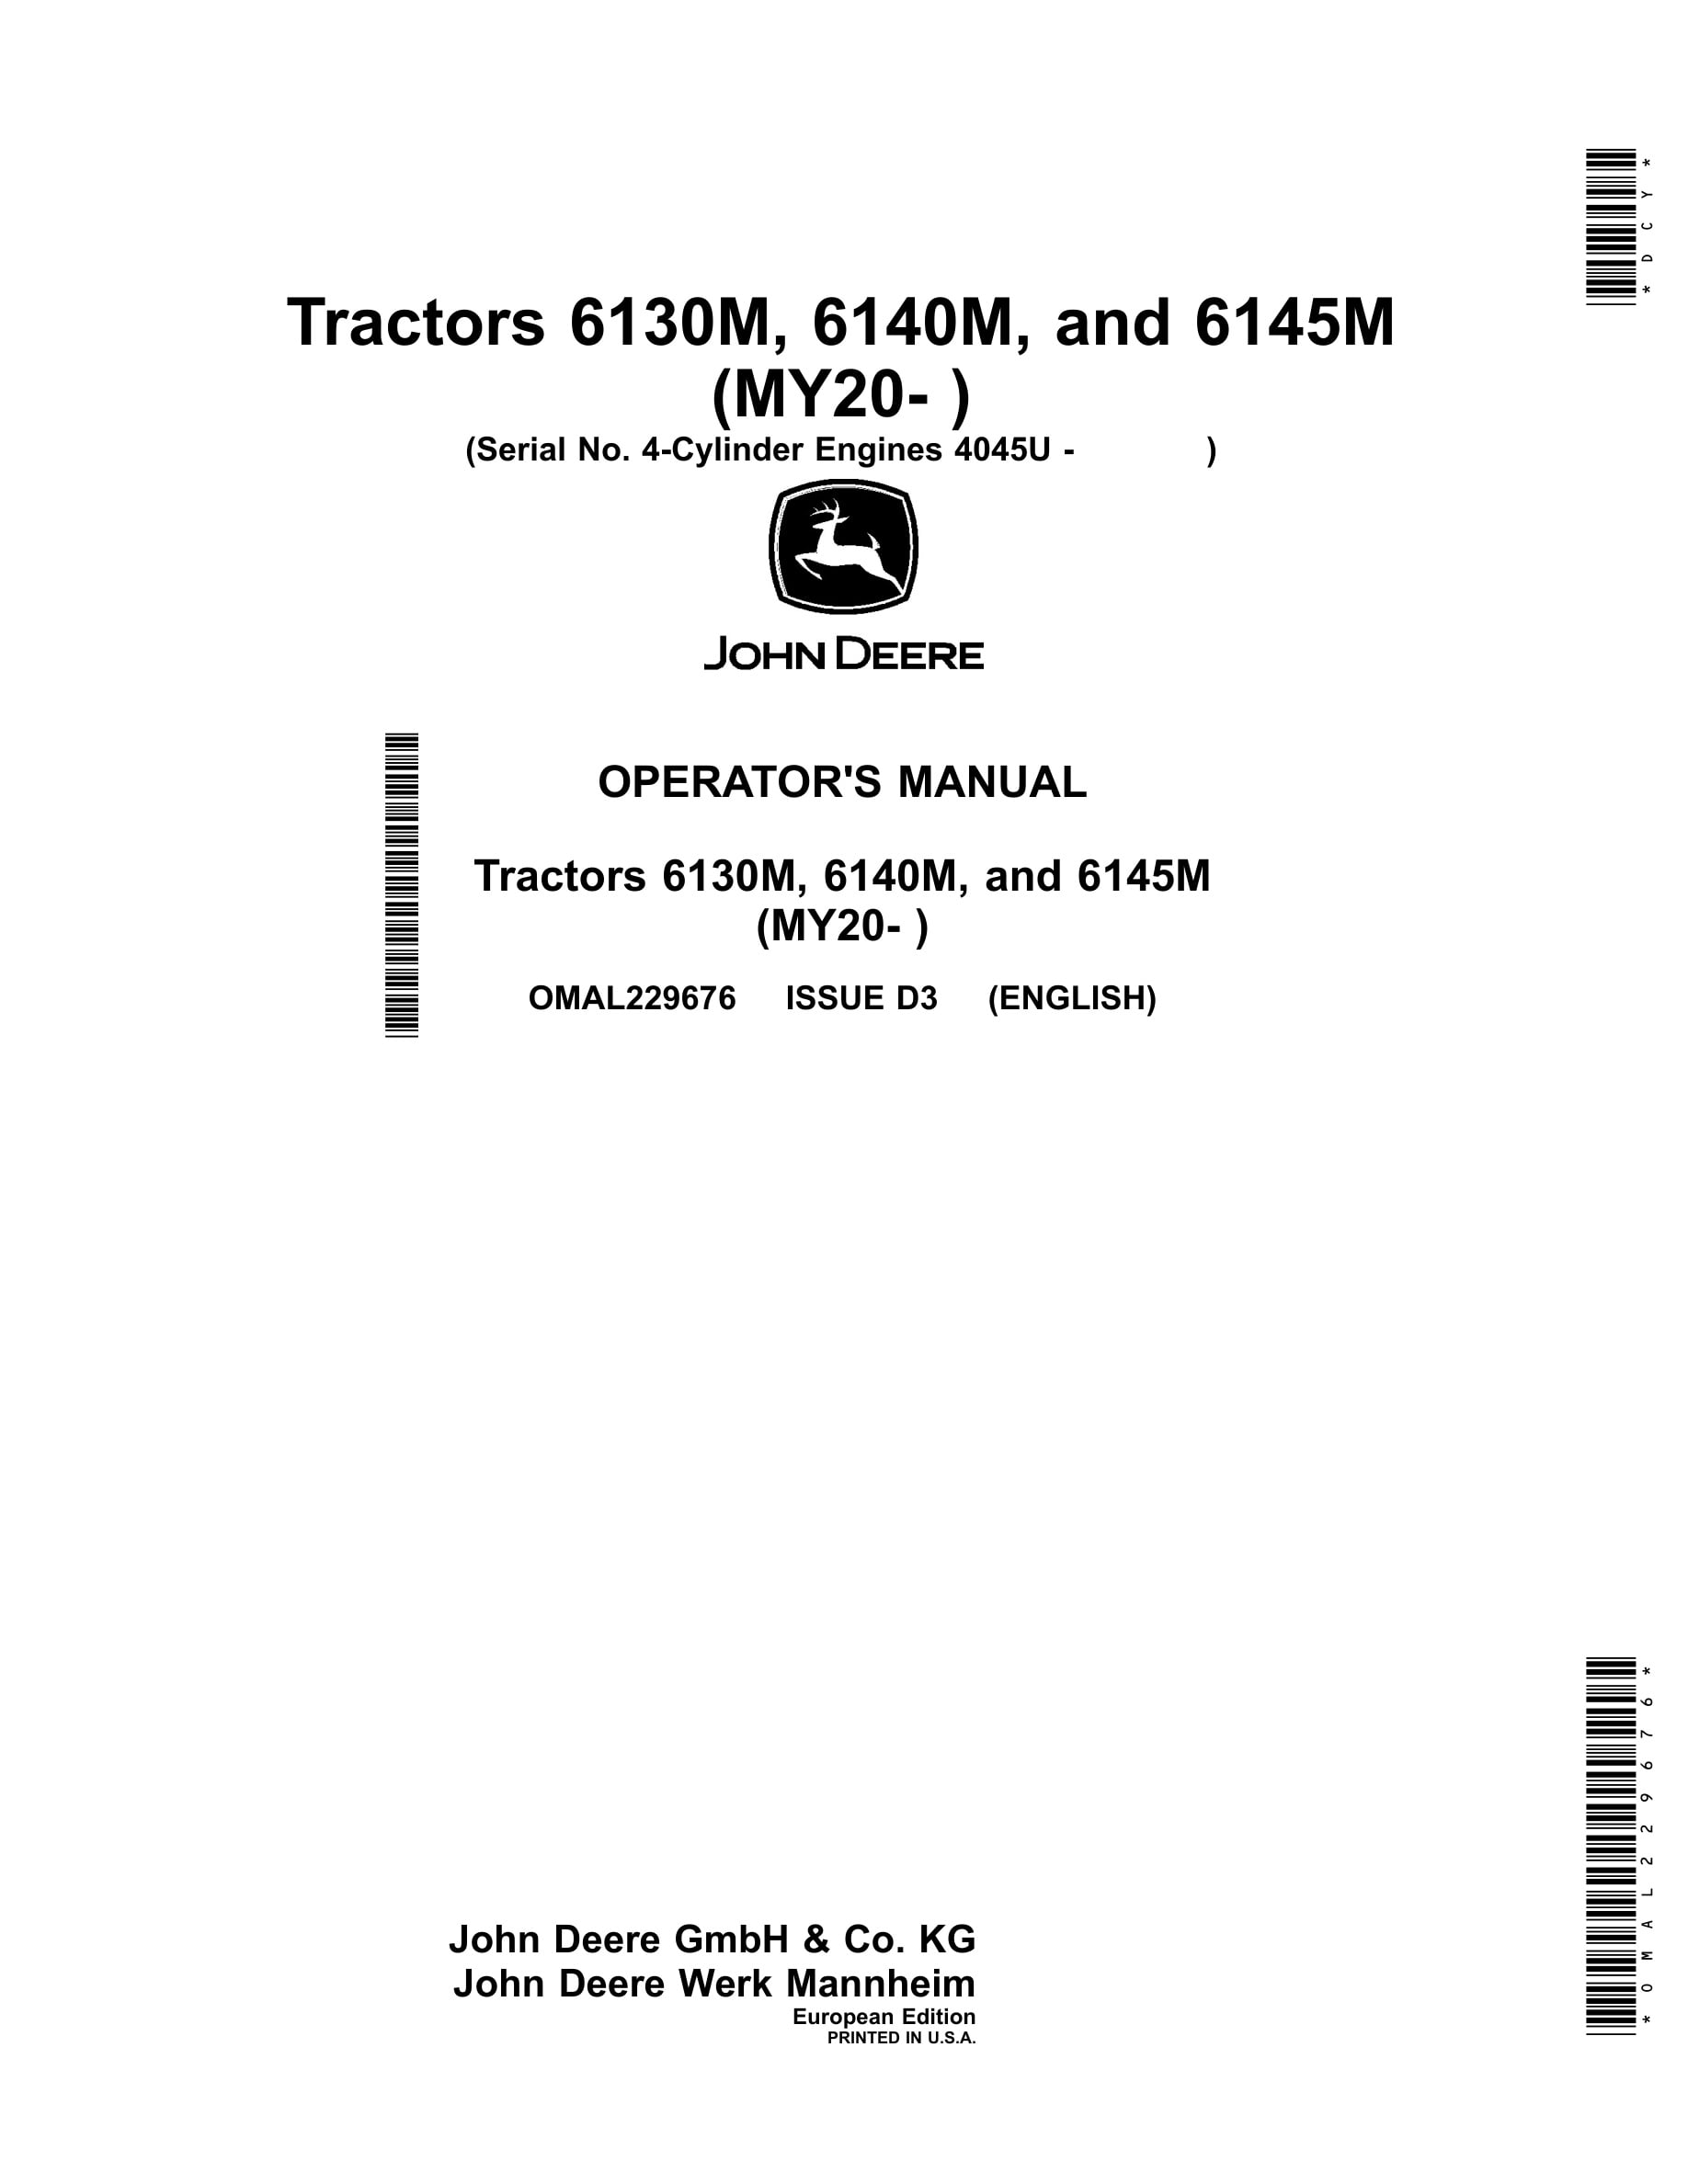 John Deere 6130m, 6140m, And 6145m Tractors Operator Manuals OMAL229676-1